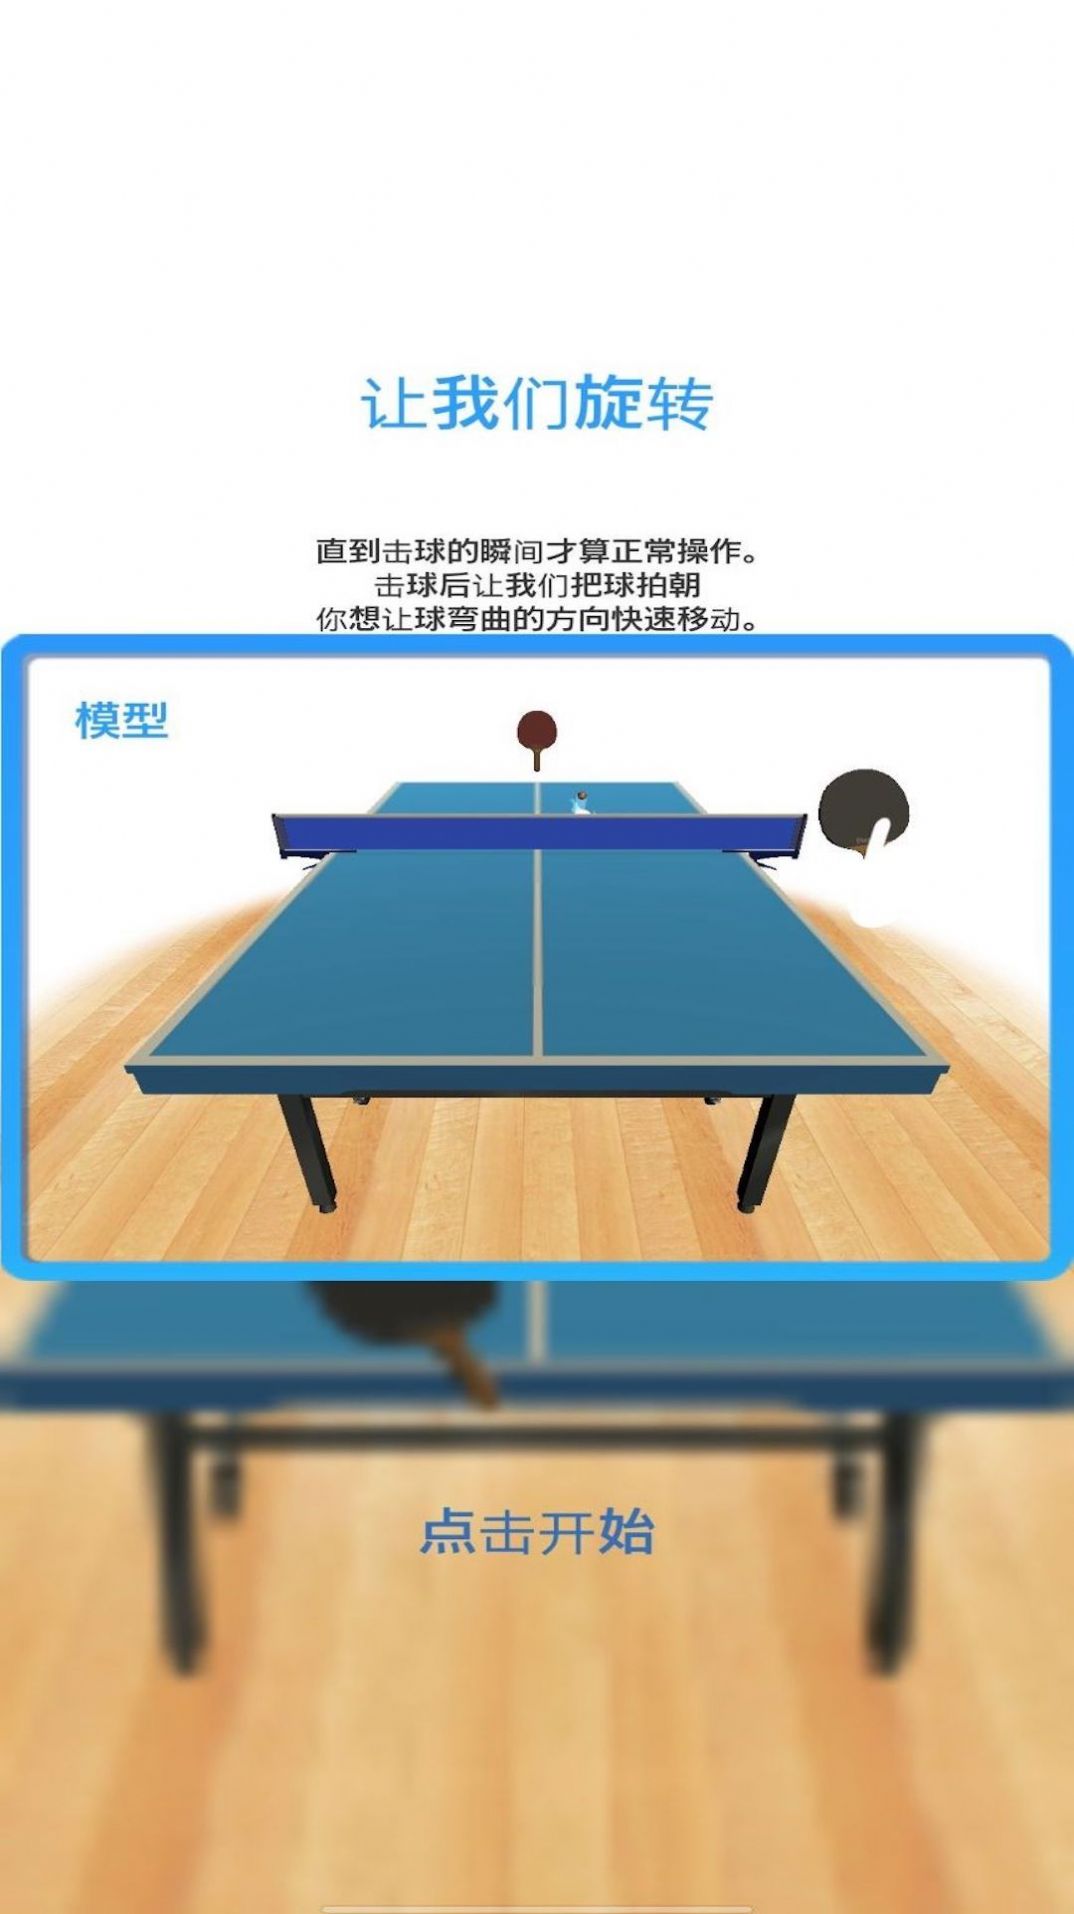 模拟乒乓球下载安装下载,模拟乒乓球游戏下载安装 v1.0